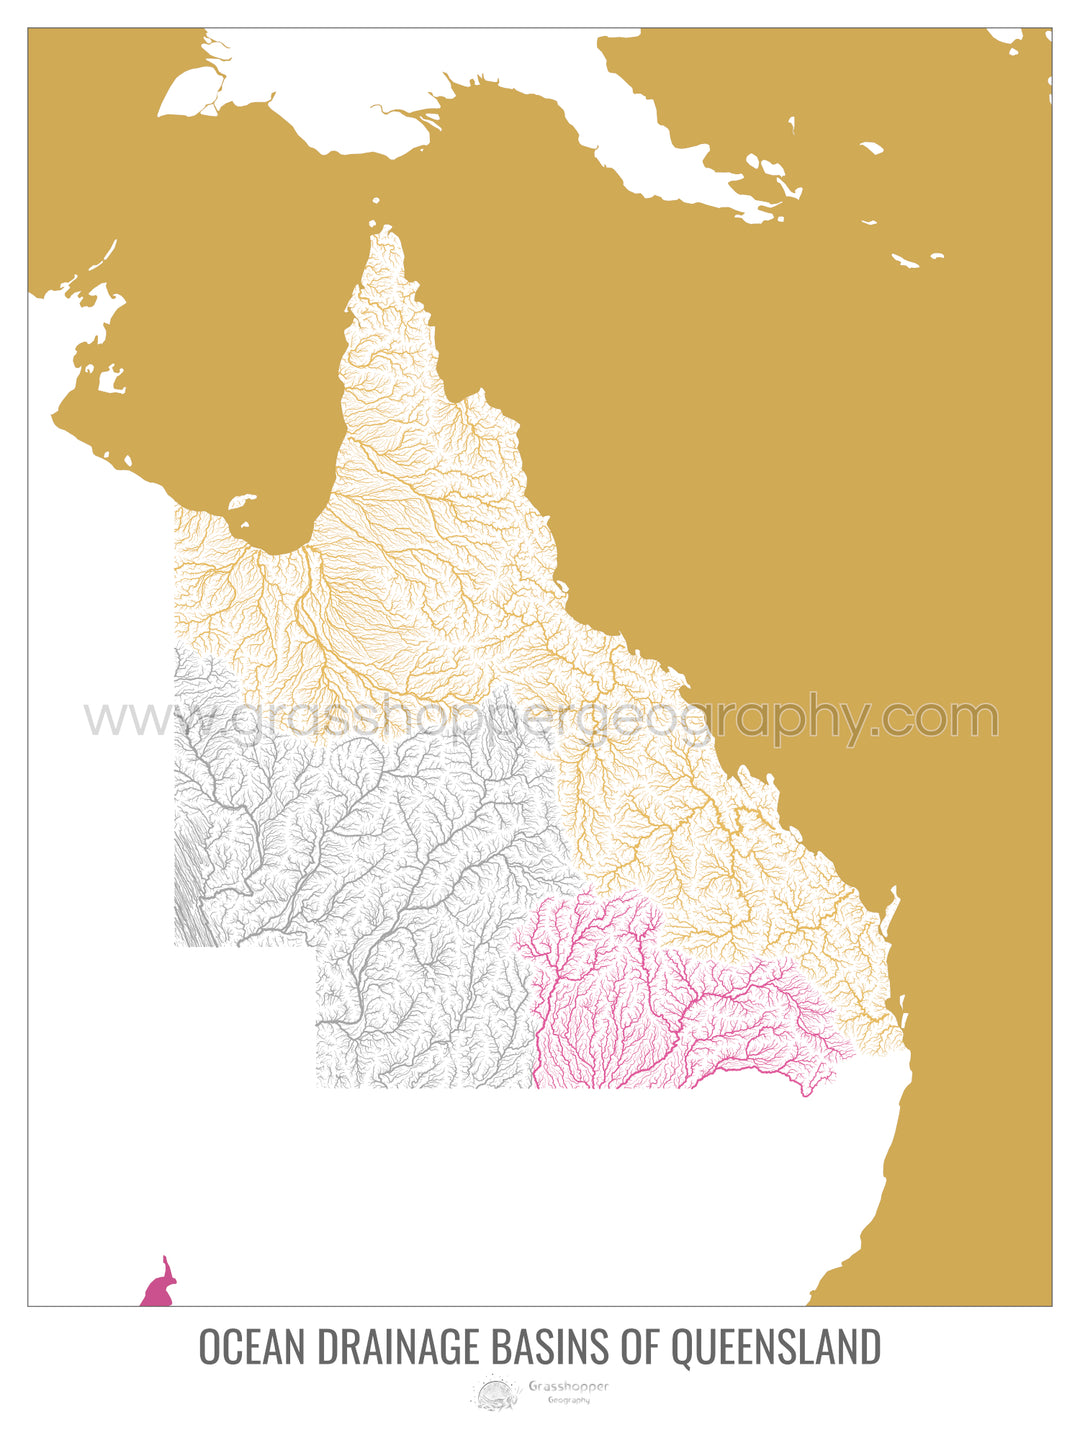 Queensland - Mapa de la cuenca de drenaje oceánico, blanco v2 - Lámina enmarcada